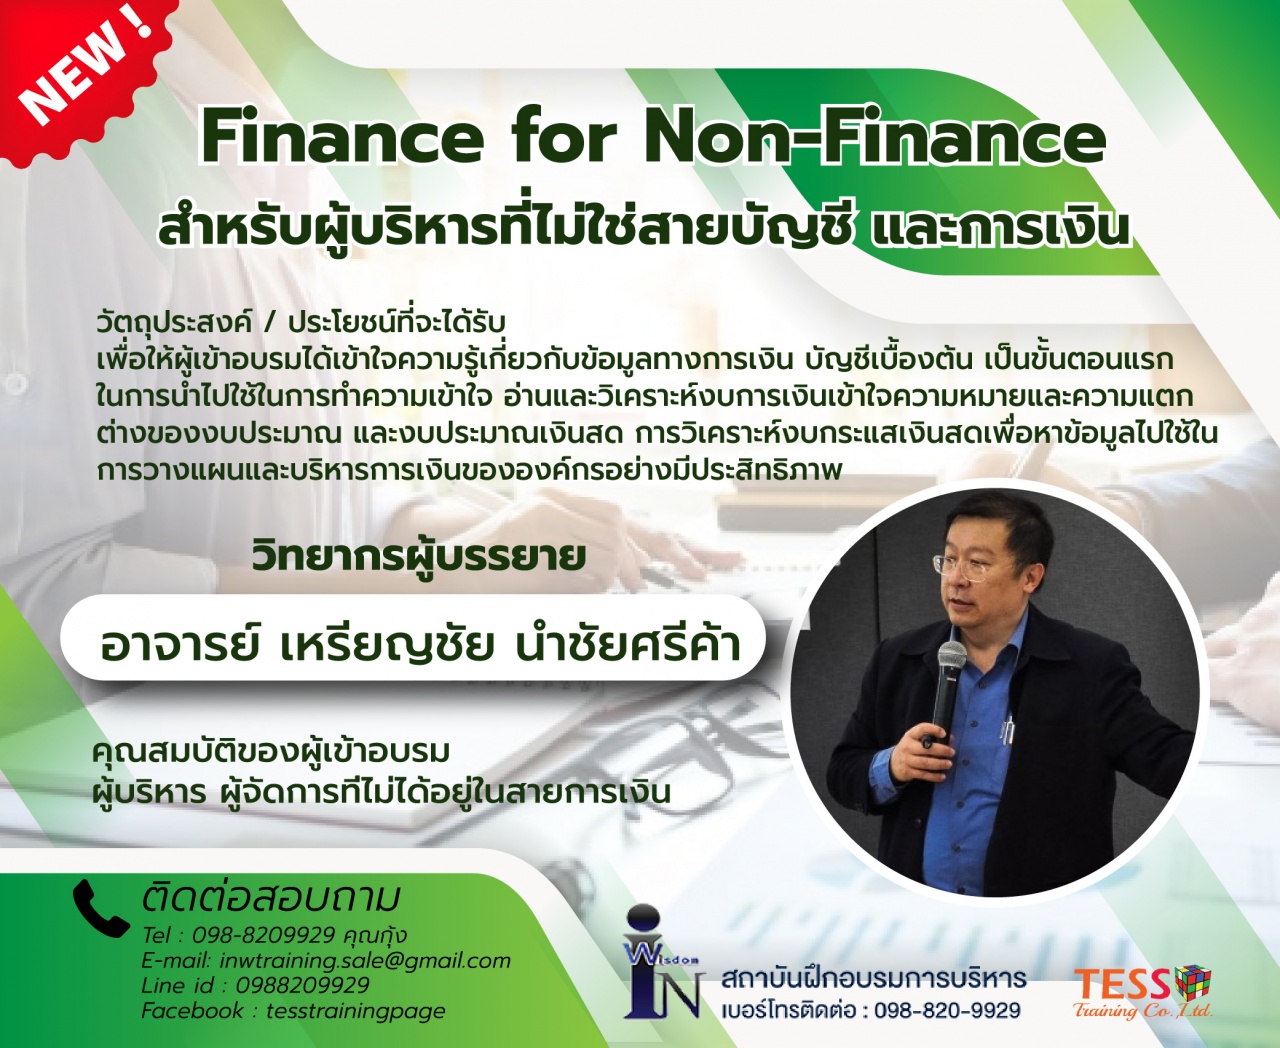 เปิดรับสมัคร ยืนยัน หลักสูตร Finance for Non-Finance สำหรับผู้บริหารที่ไม่ใช่สายบัญชี และการเงิน  24 มี.ค.65